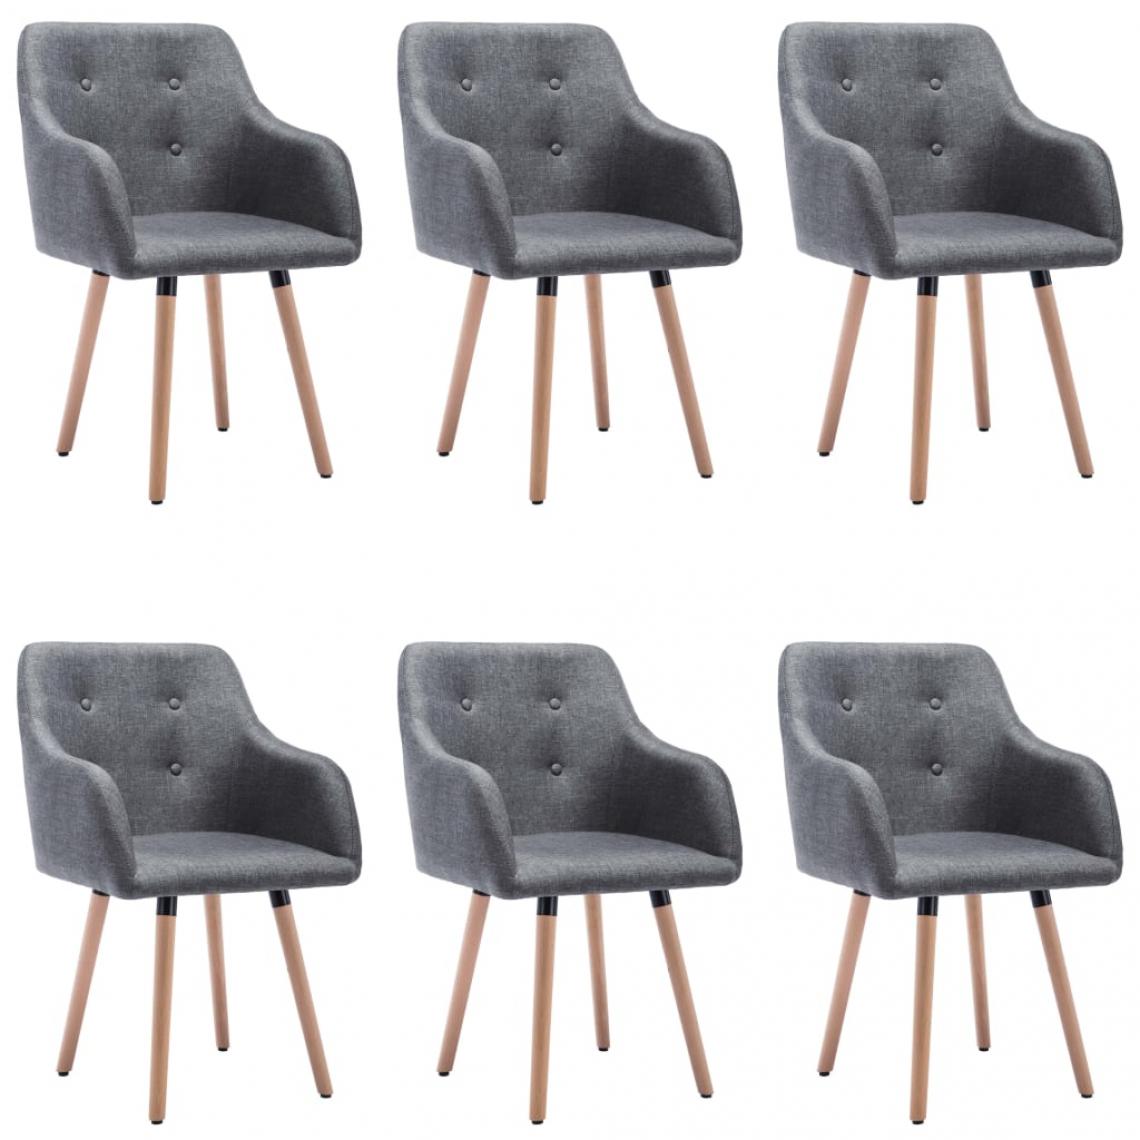 Decoshop26 - Lot de 6 chaises de salle à manger cuisine capitonné style moderne en tissu gris foncé CDS022462 - Chaises